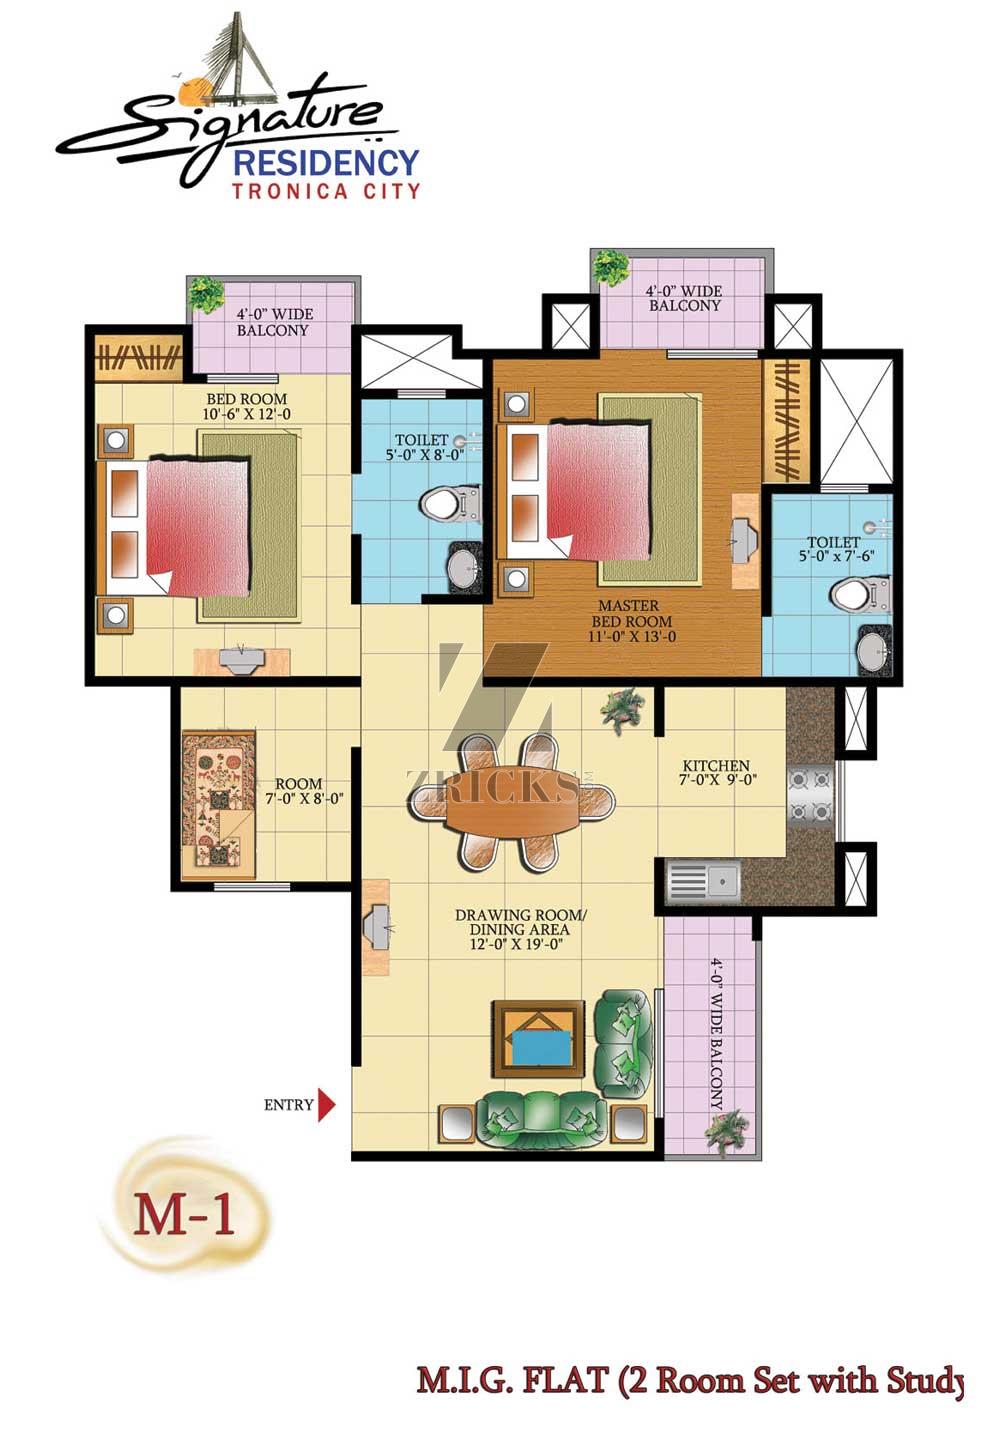 RMS Signature Residency Floor Plan